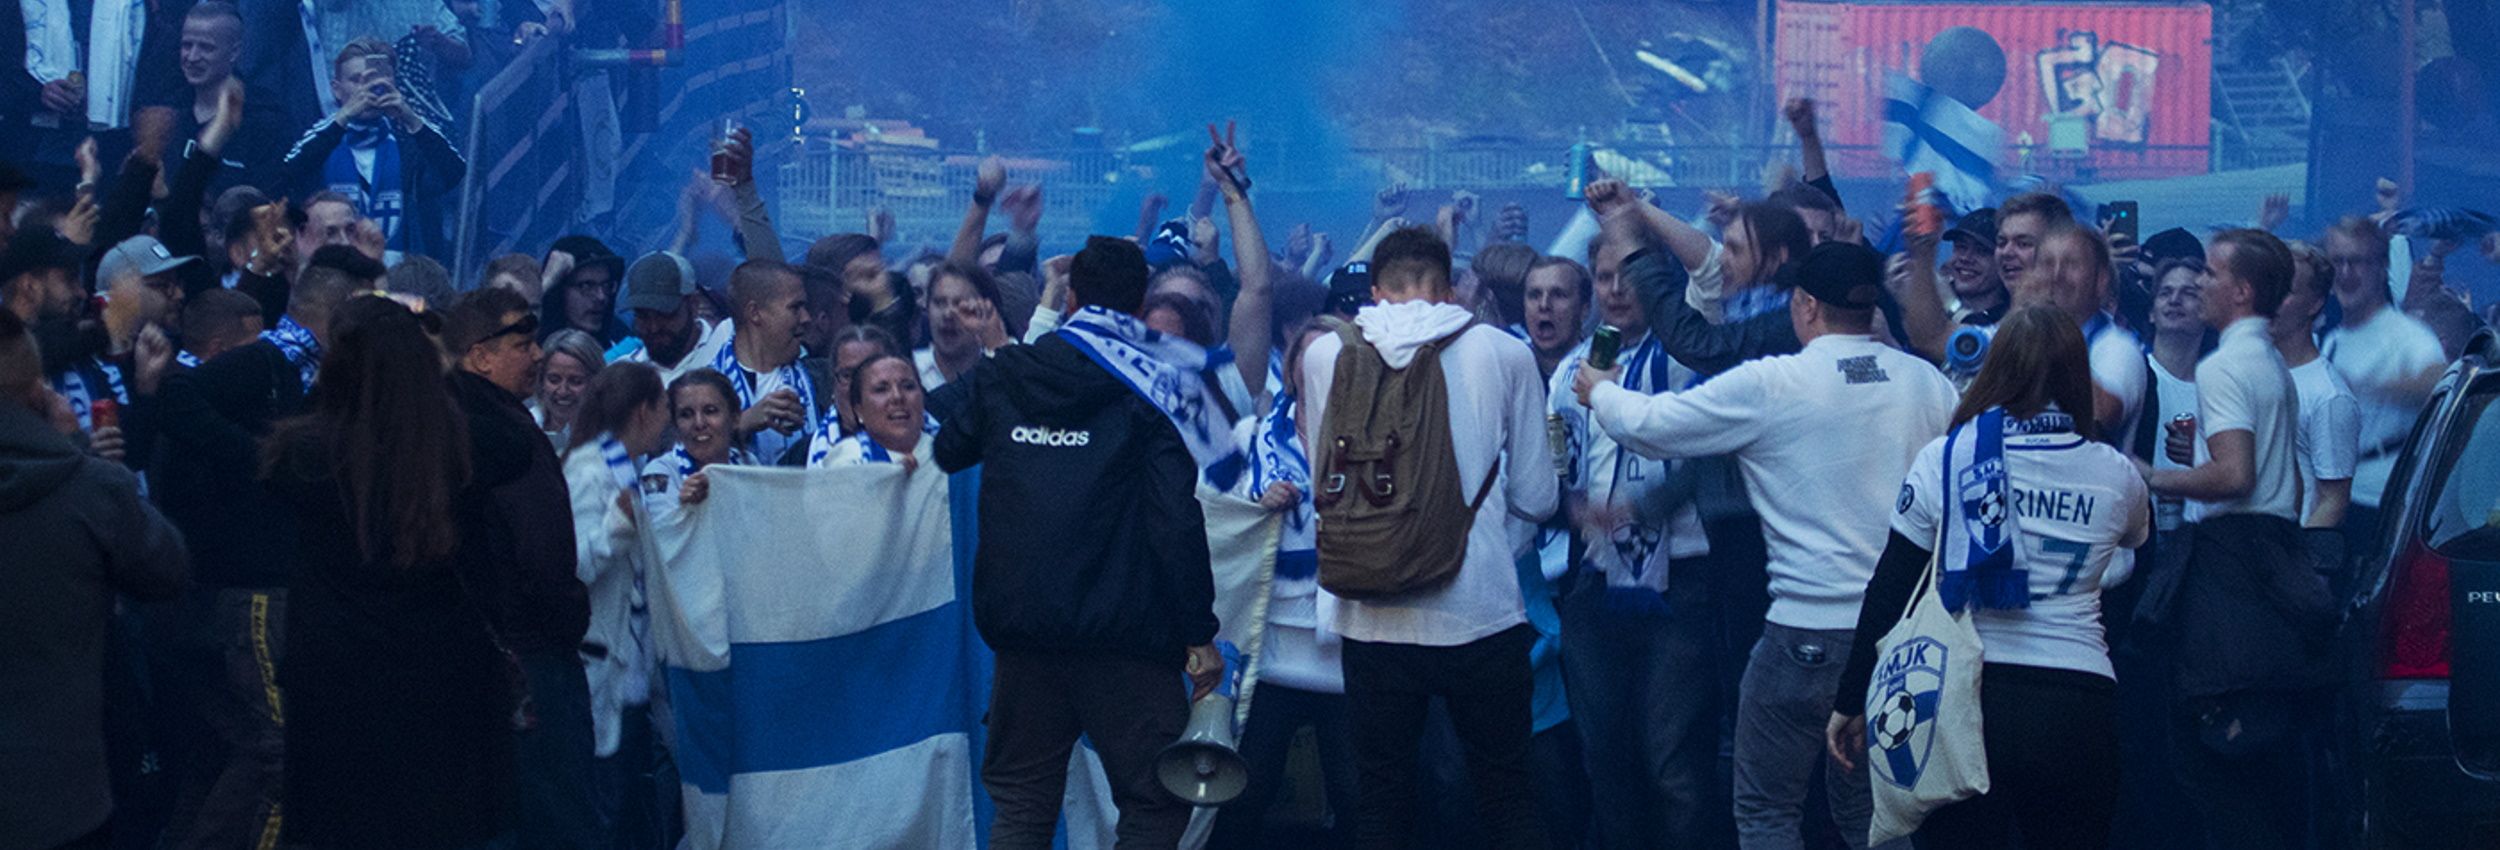 5.9.2019 Suomi - Kreikka EM-karsintaottelusta Ratinan Stadionilta Tampereelta. Pohjoiskaarre on lähtenyt marssille Keskustorilta kohti Ratinan Stadionia. Tunnelma on korkealla. Ottelu päättyi 1-0.